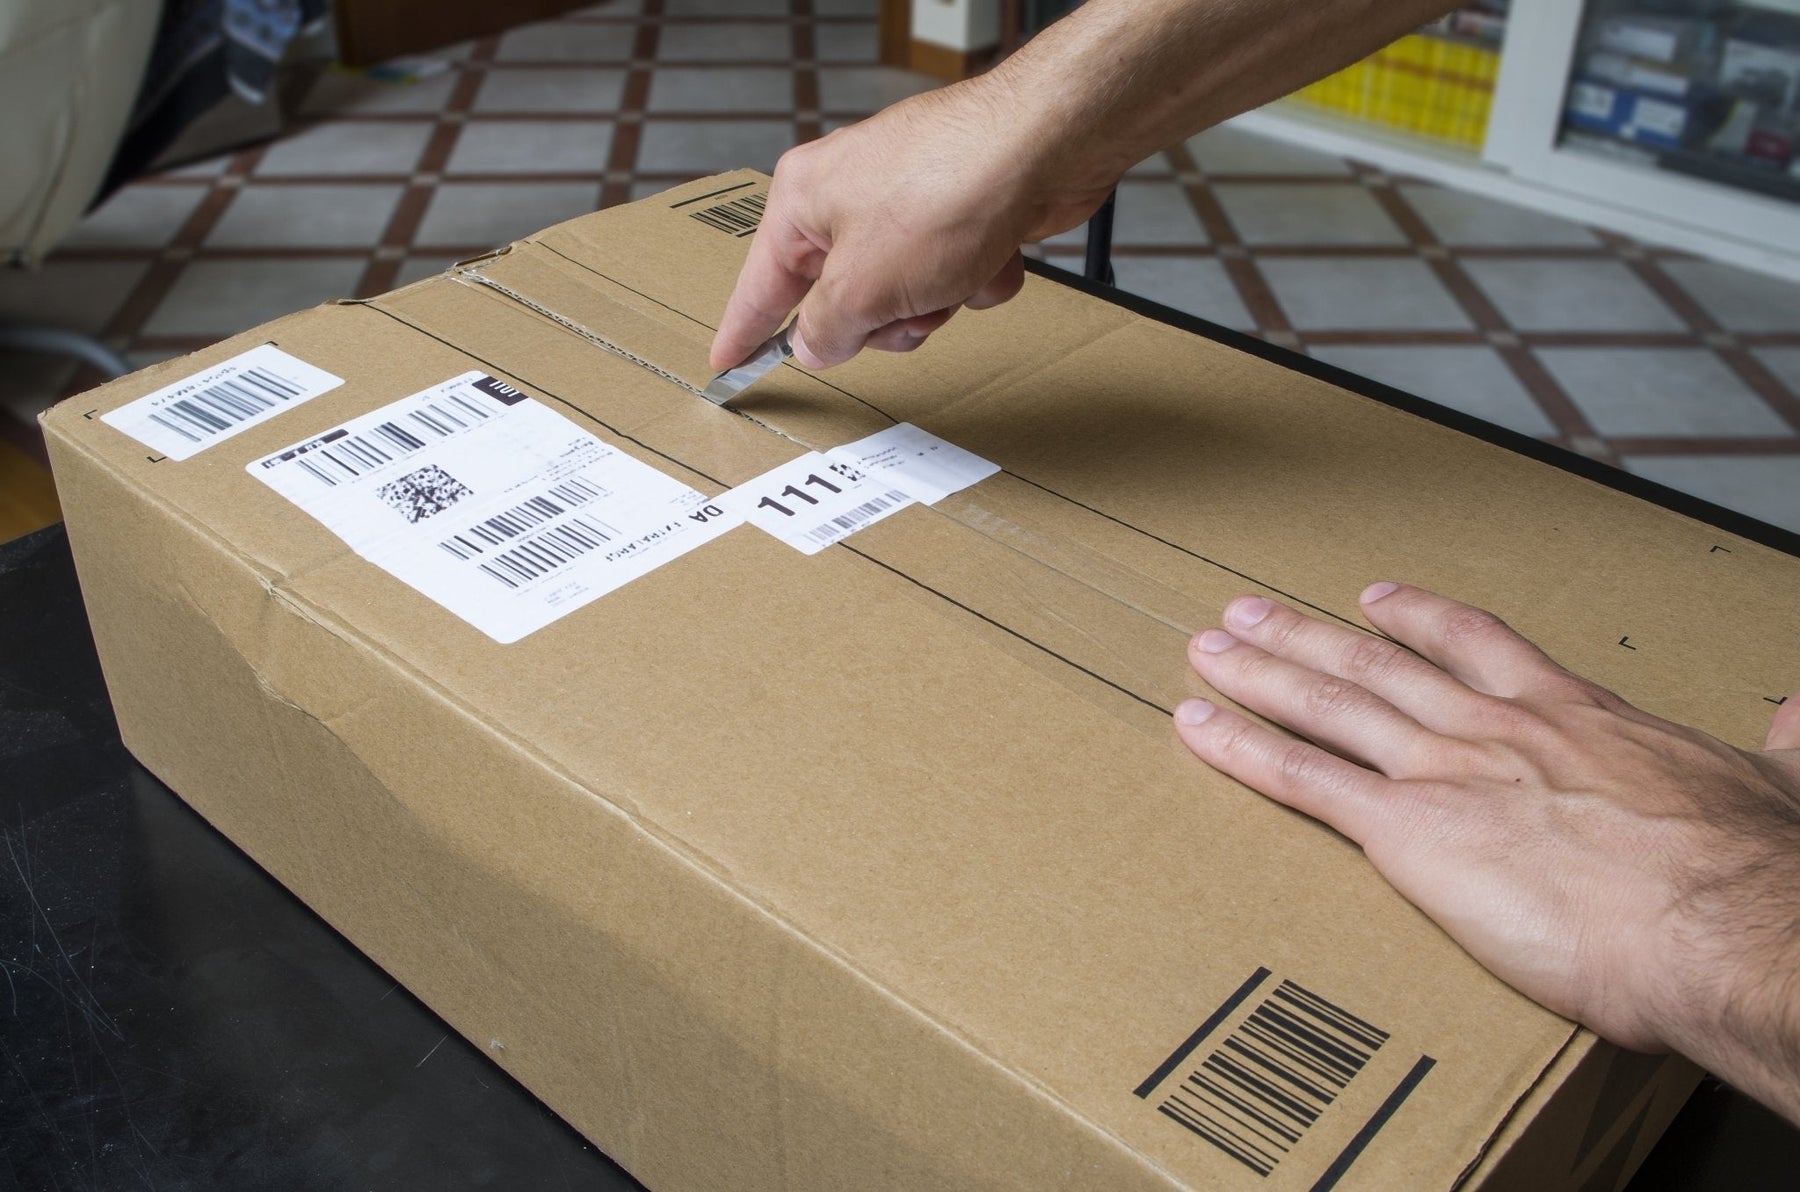 Navigating the Amazon Buy Box - Snap Supply